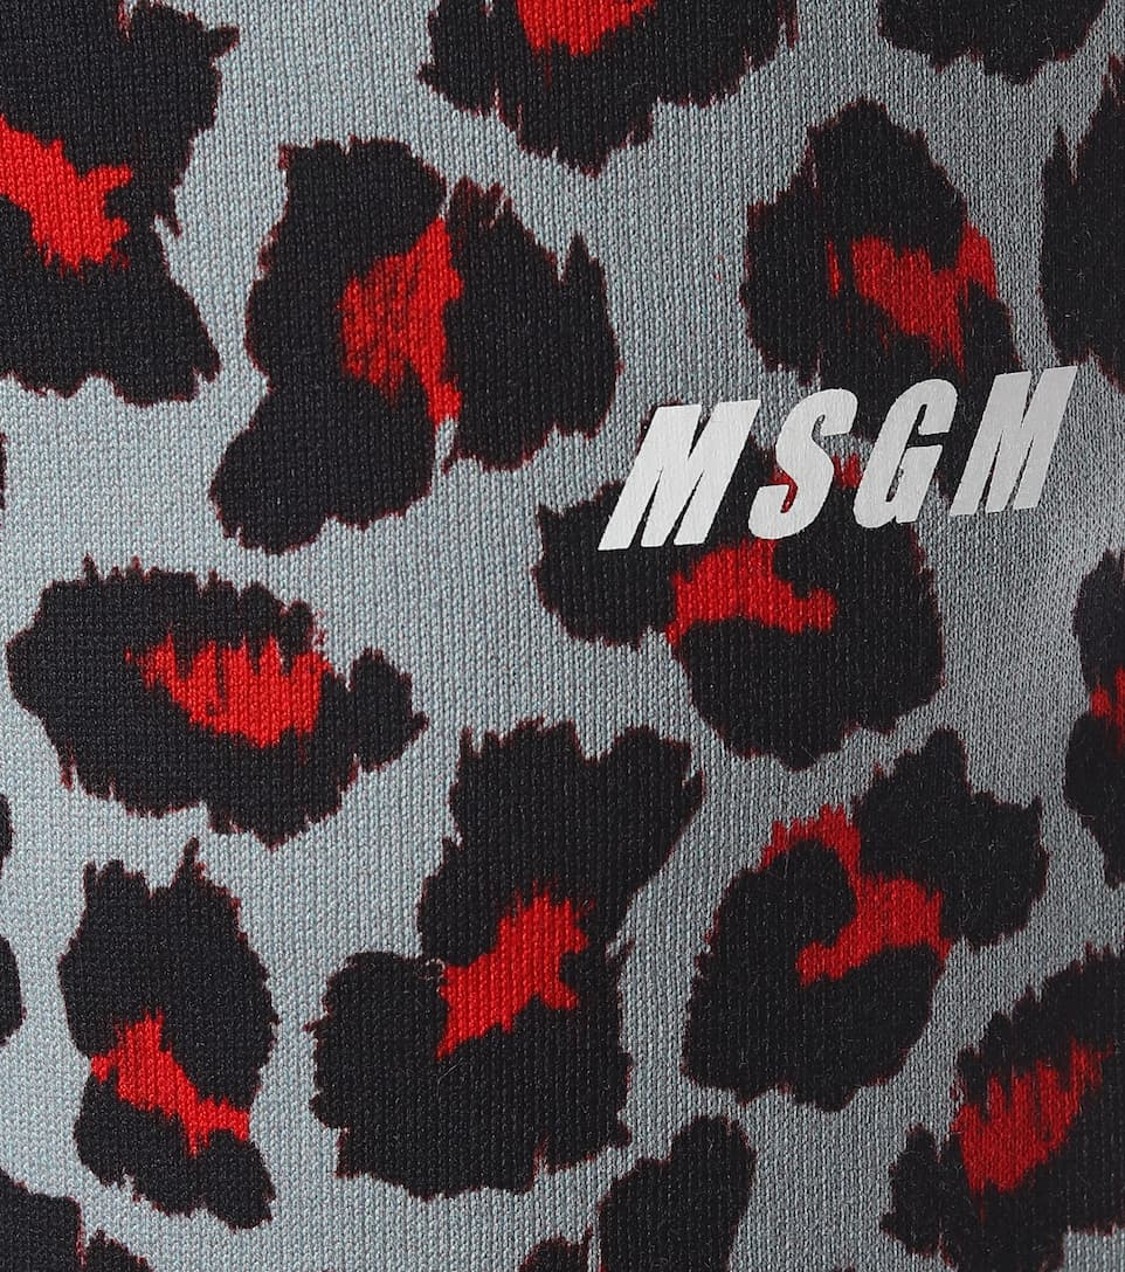 shop MSGM Sales Pantaloni: Pantalone MSGM, in stampa leopardata, chiuso infondo con polsino nero, coulisse in vita, in cotone, fit morbido, tasche laterali.

Composizione: 100% cotone. number 1511